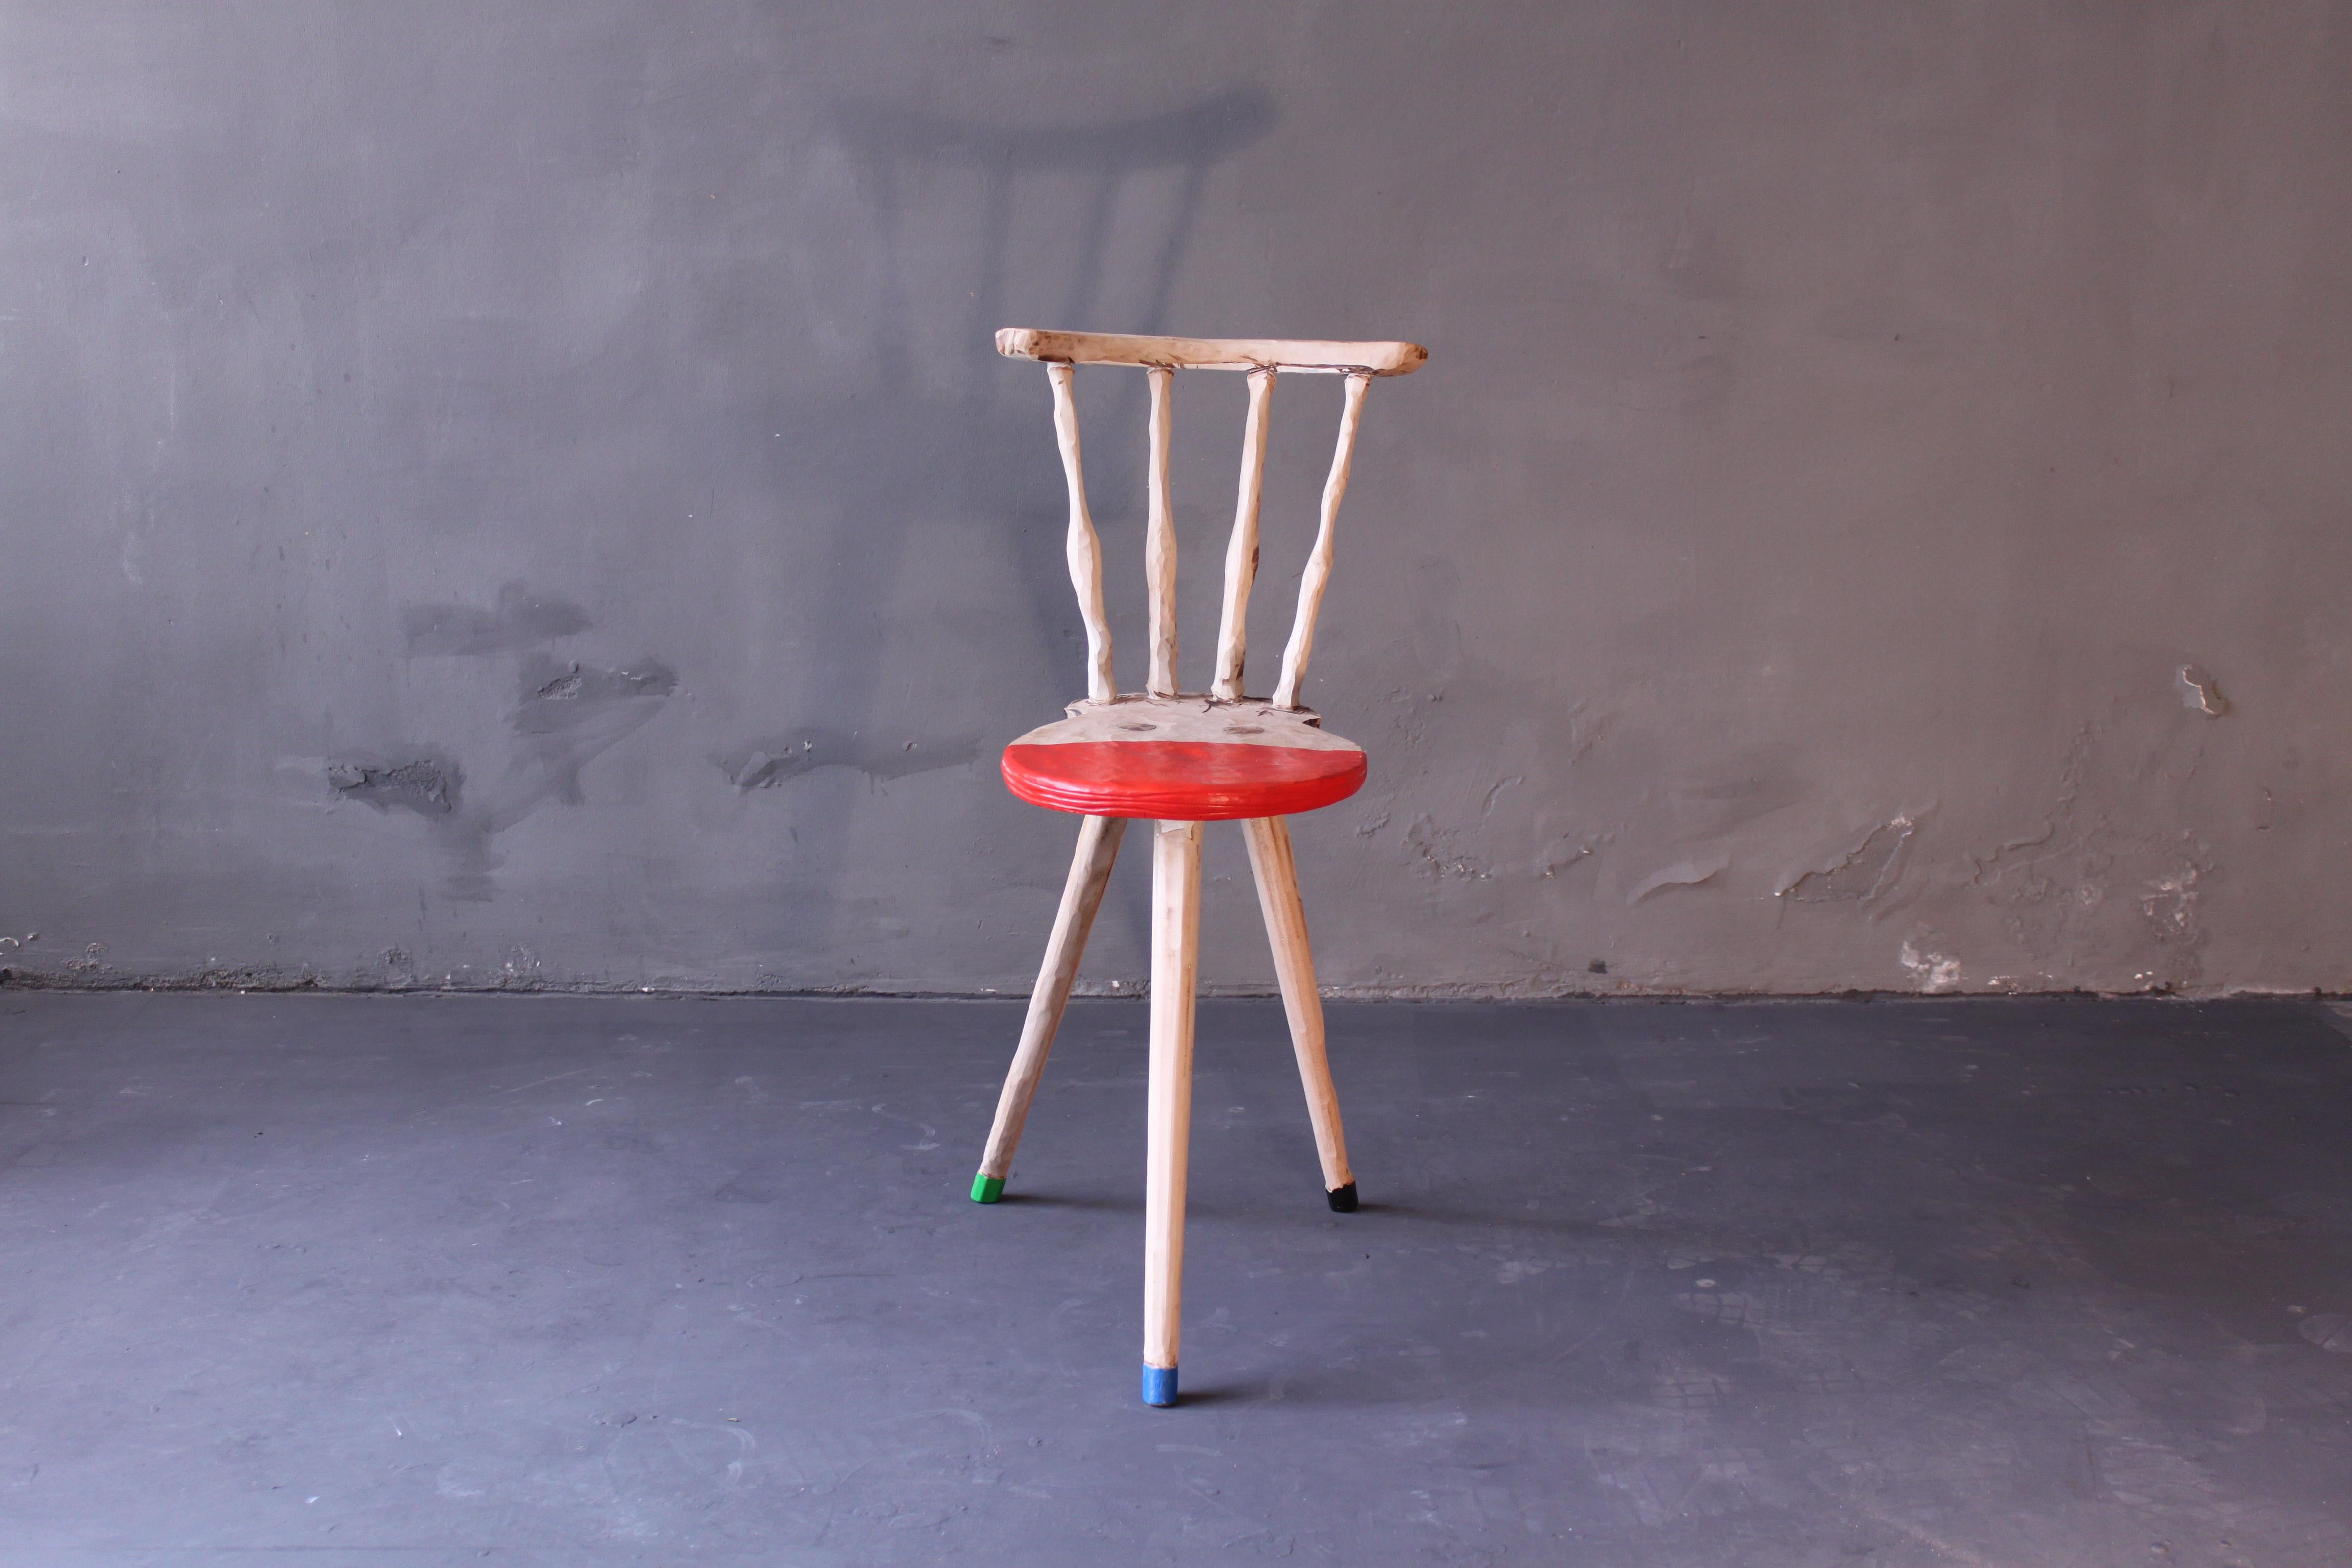 Simple chaise de fermier, coupée, à l'étranger, peinte. Un bon exemple de l'œuvre d'art fonctionnelle de Staabs.
Par mon travail, je transforme chaque chaise en un objet unique et individuel. Des chaises autrefois produites en série et homogènes